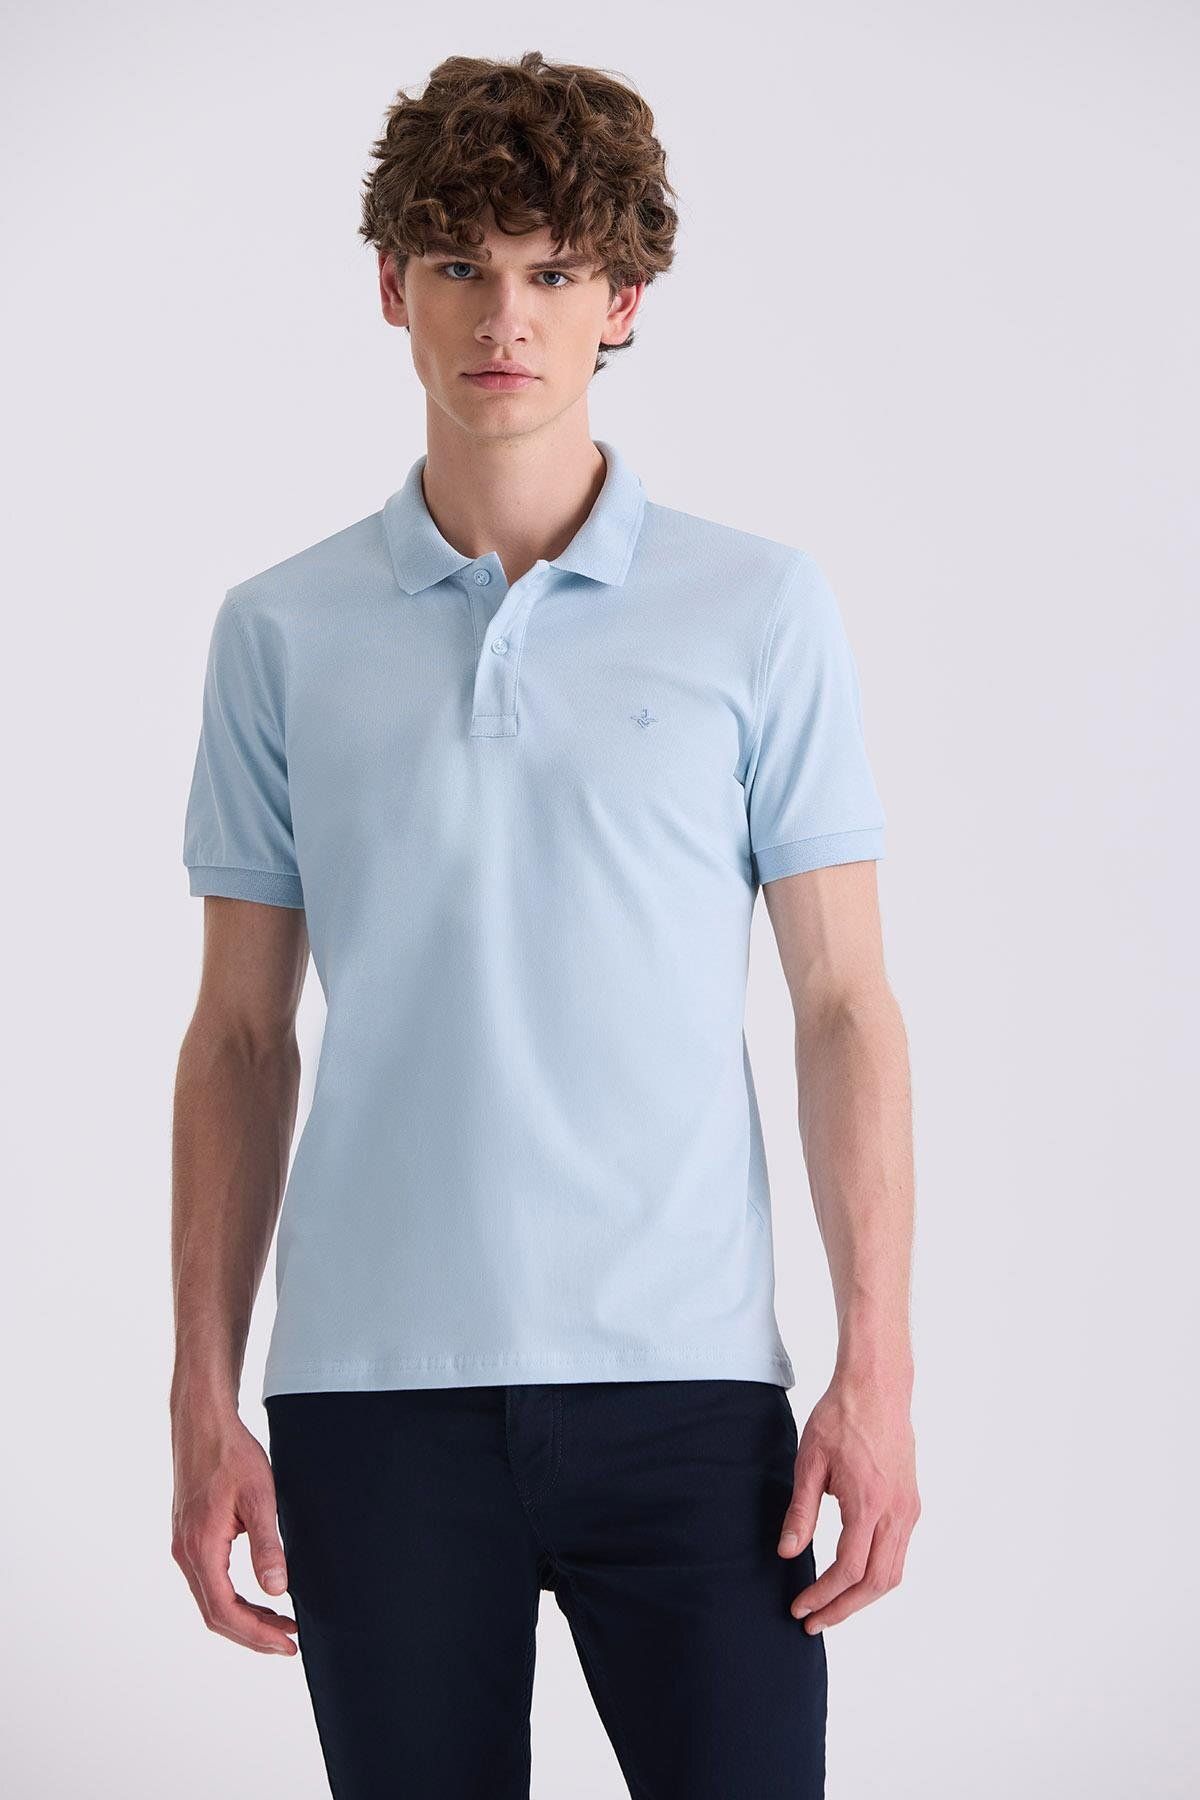 Jakamen Mavi Slim Fit Polo Yaka T-Shirt